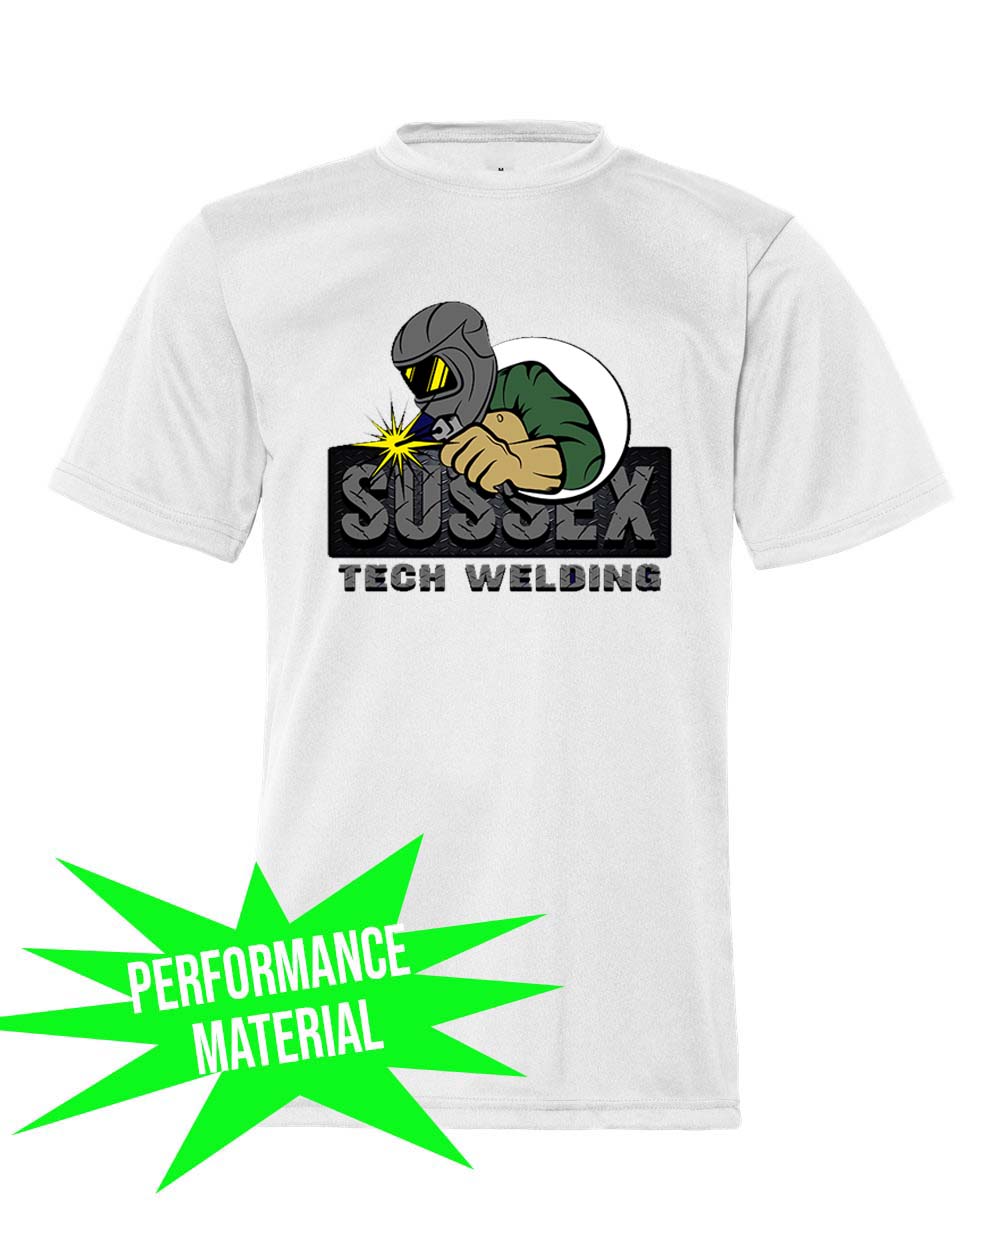 Sussex tech Welding Performance Material design 2 T-Shirt